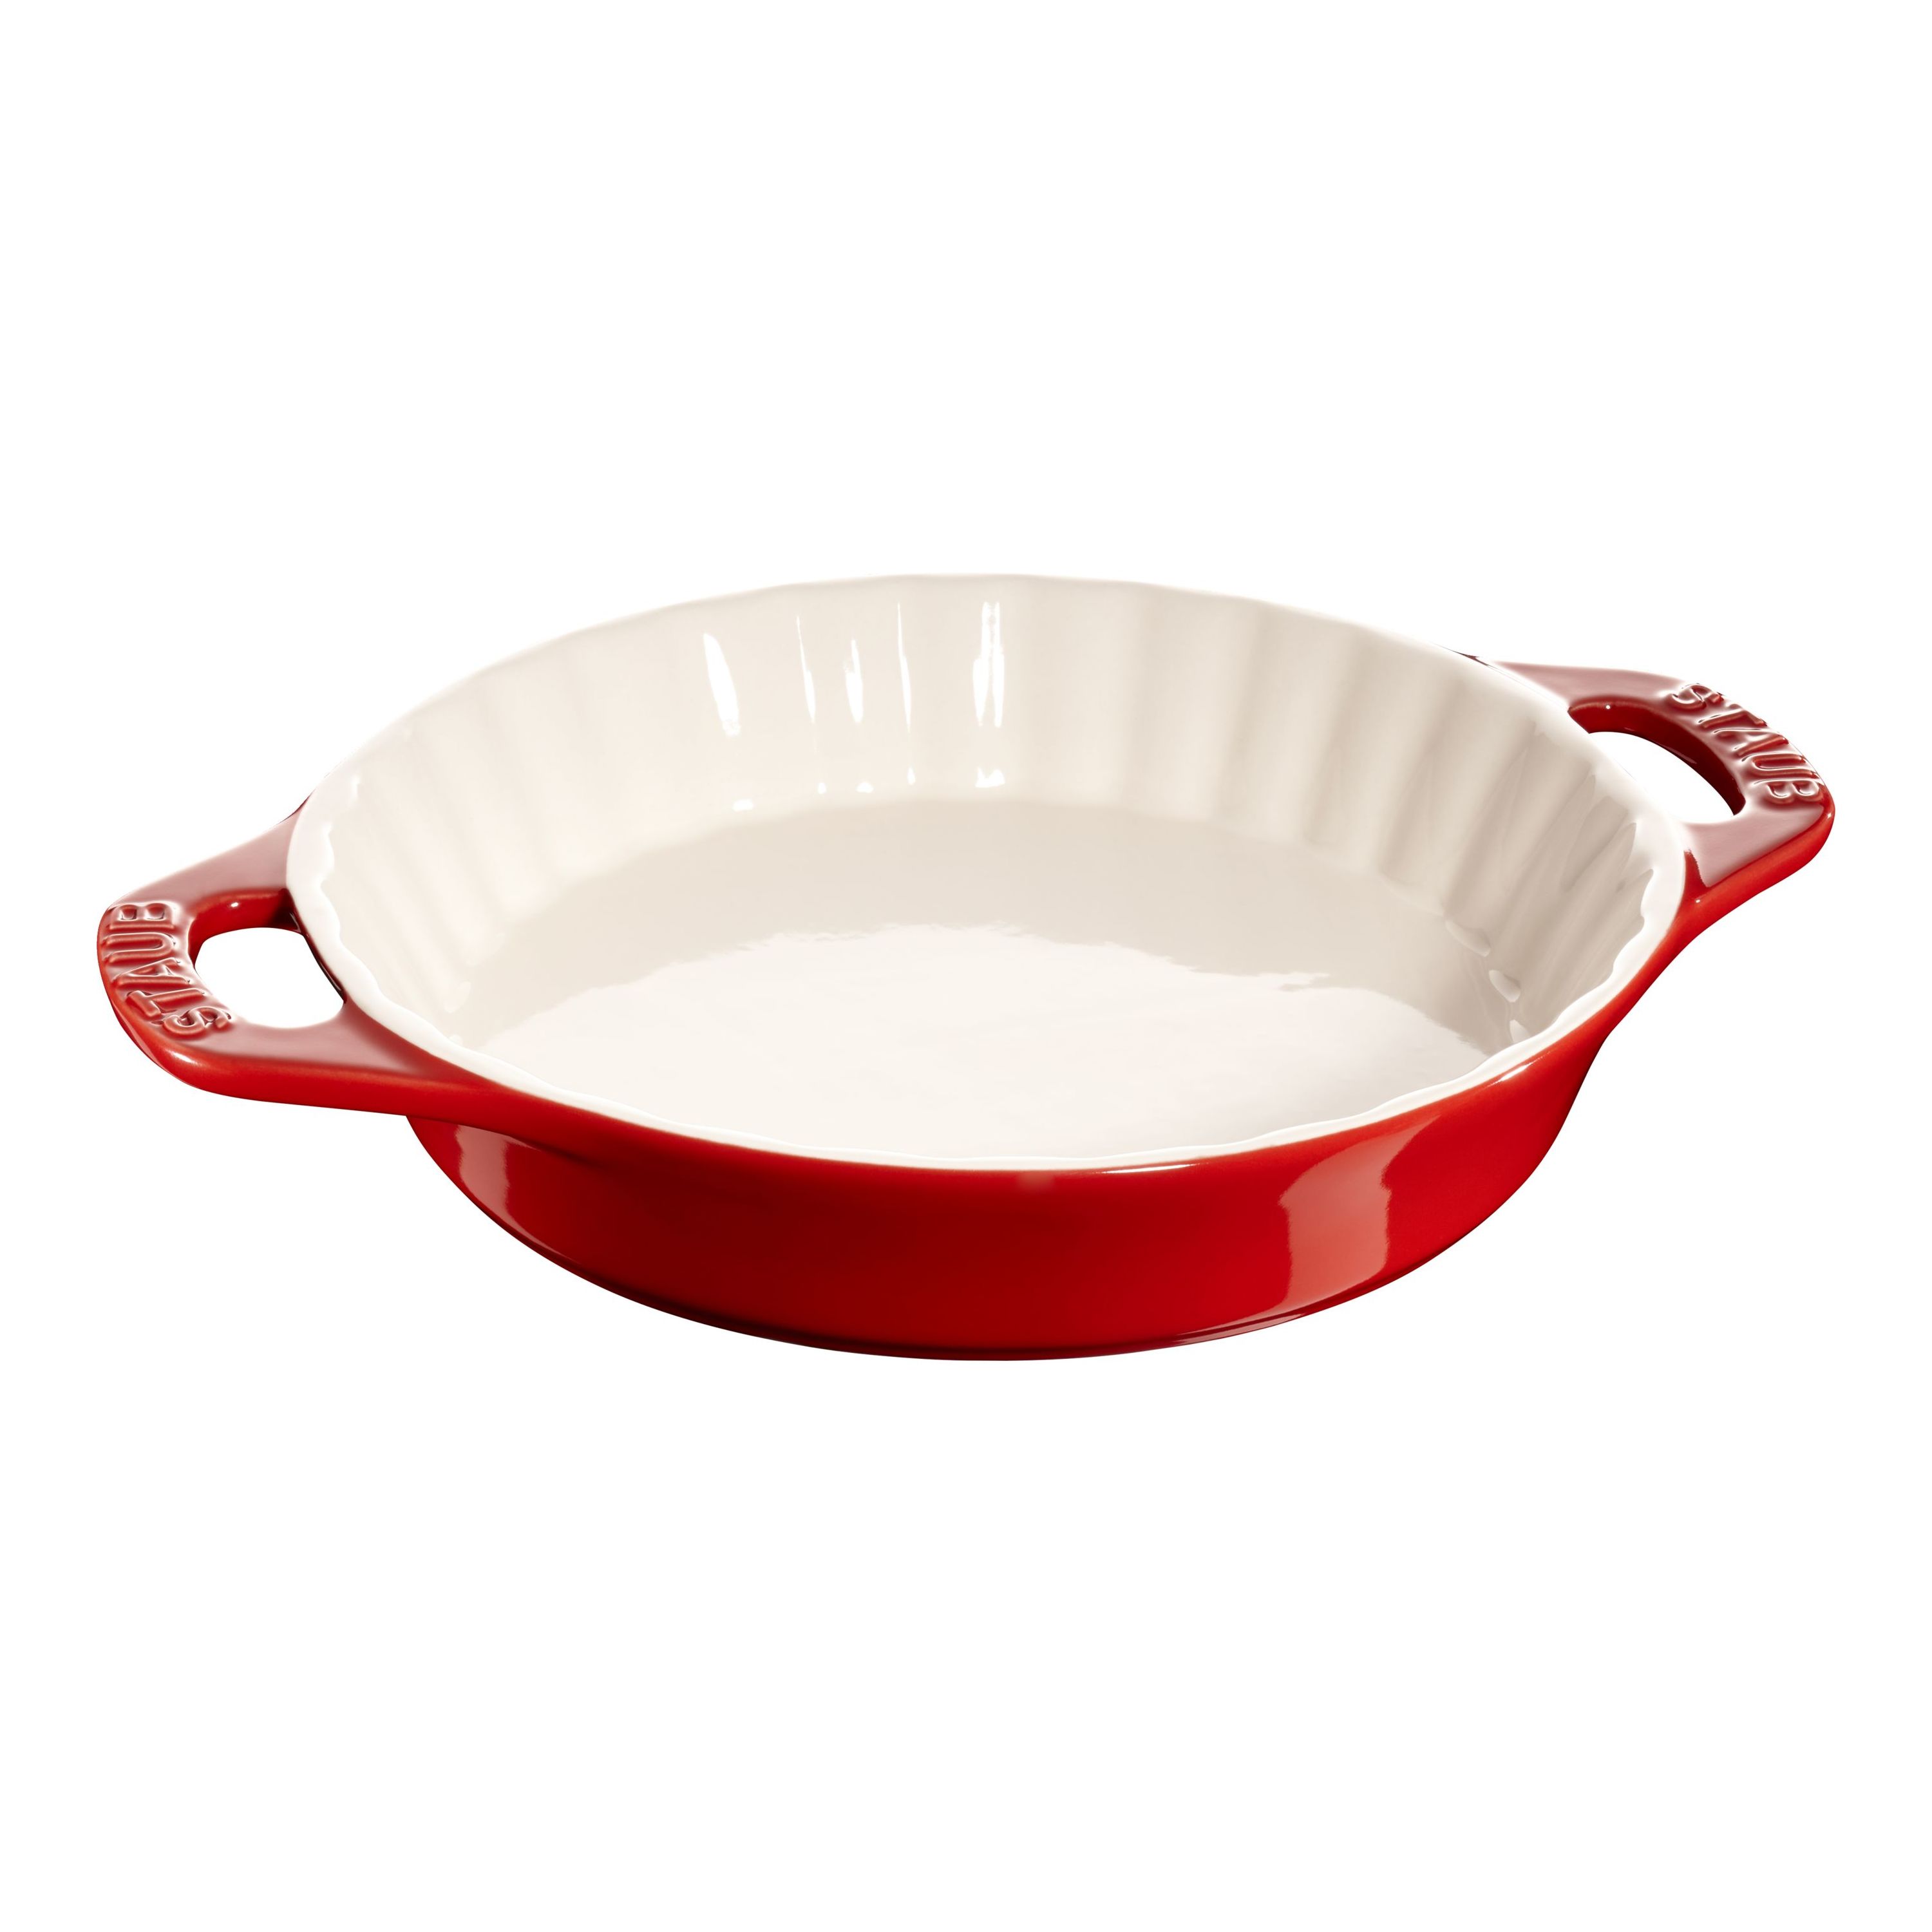  Le Creuset Stoneware Pie Dish, 9, Cerise: Le Creuset Pie Dish:  Home & Kitchen